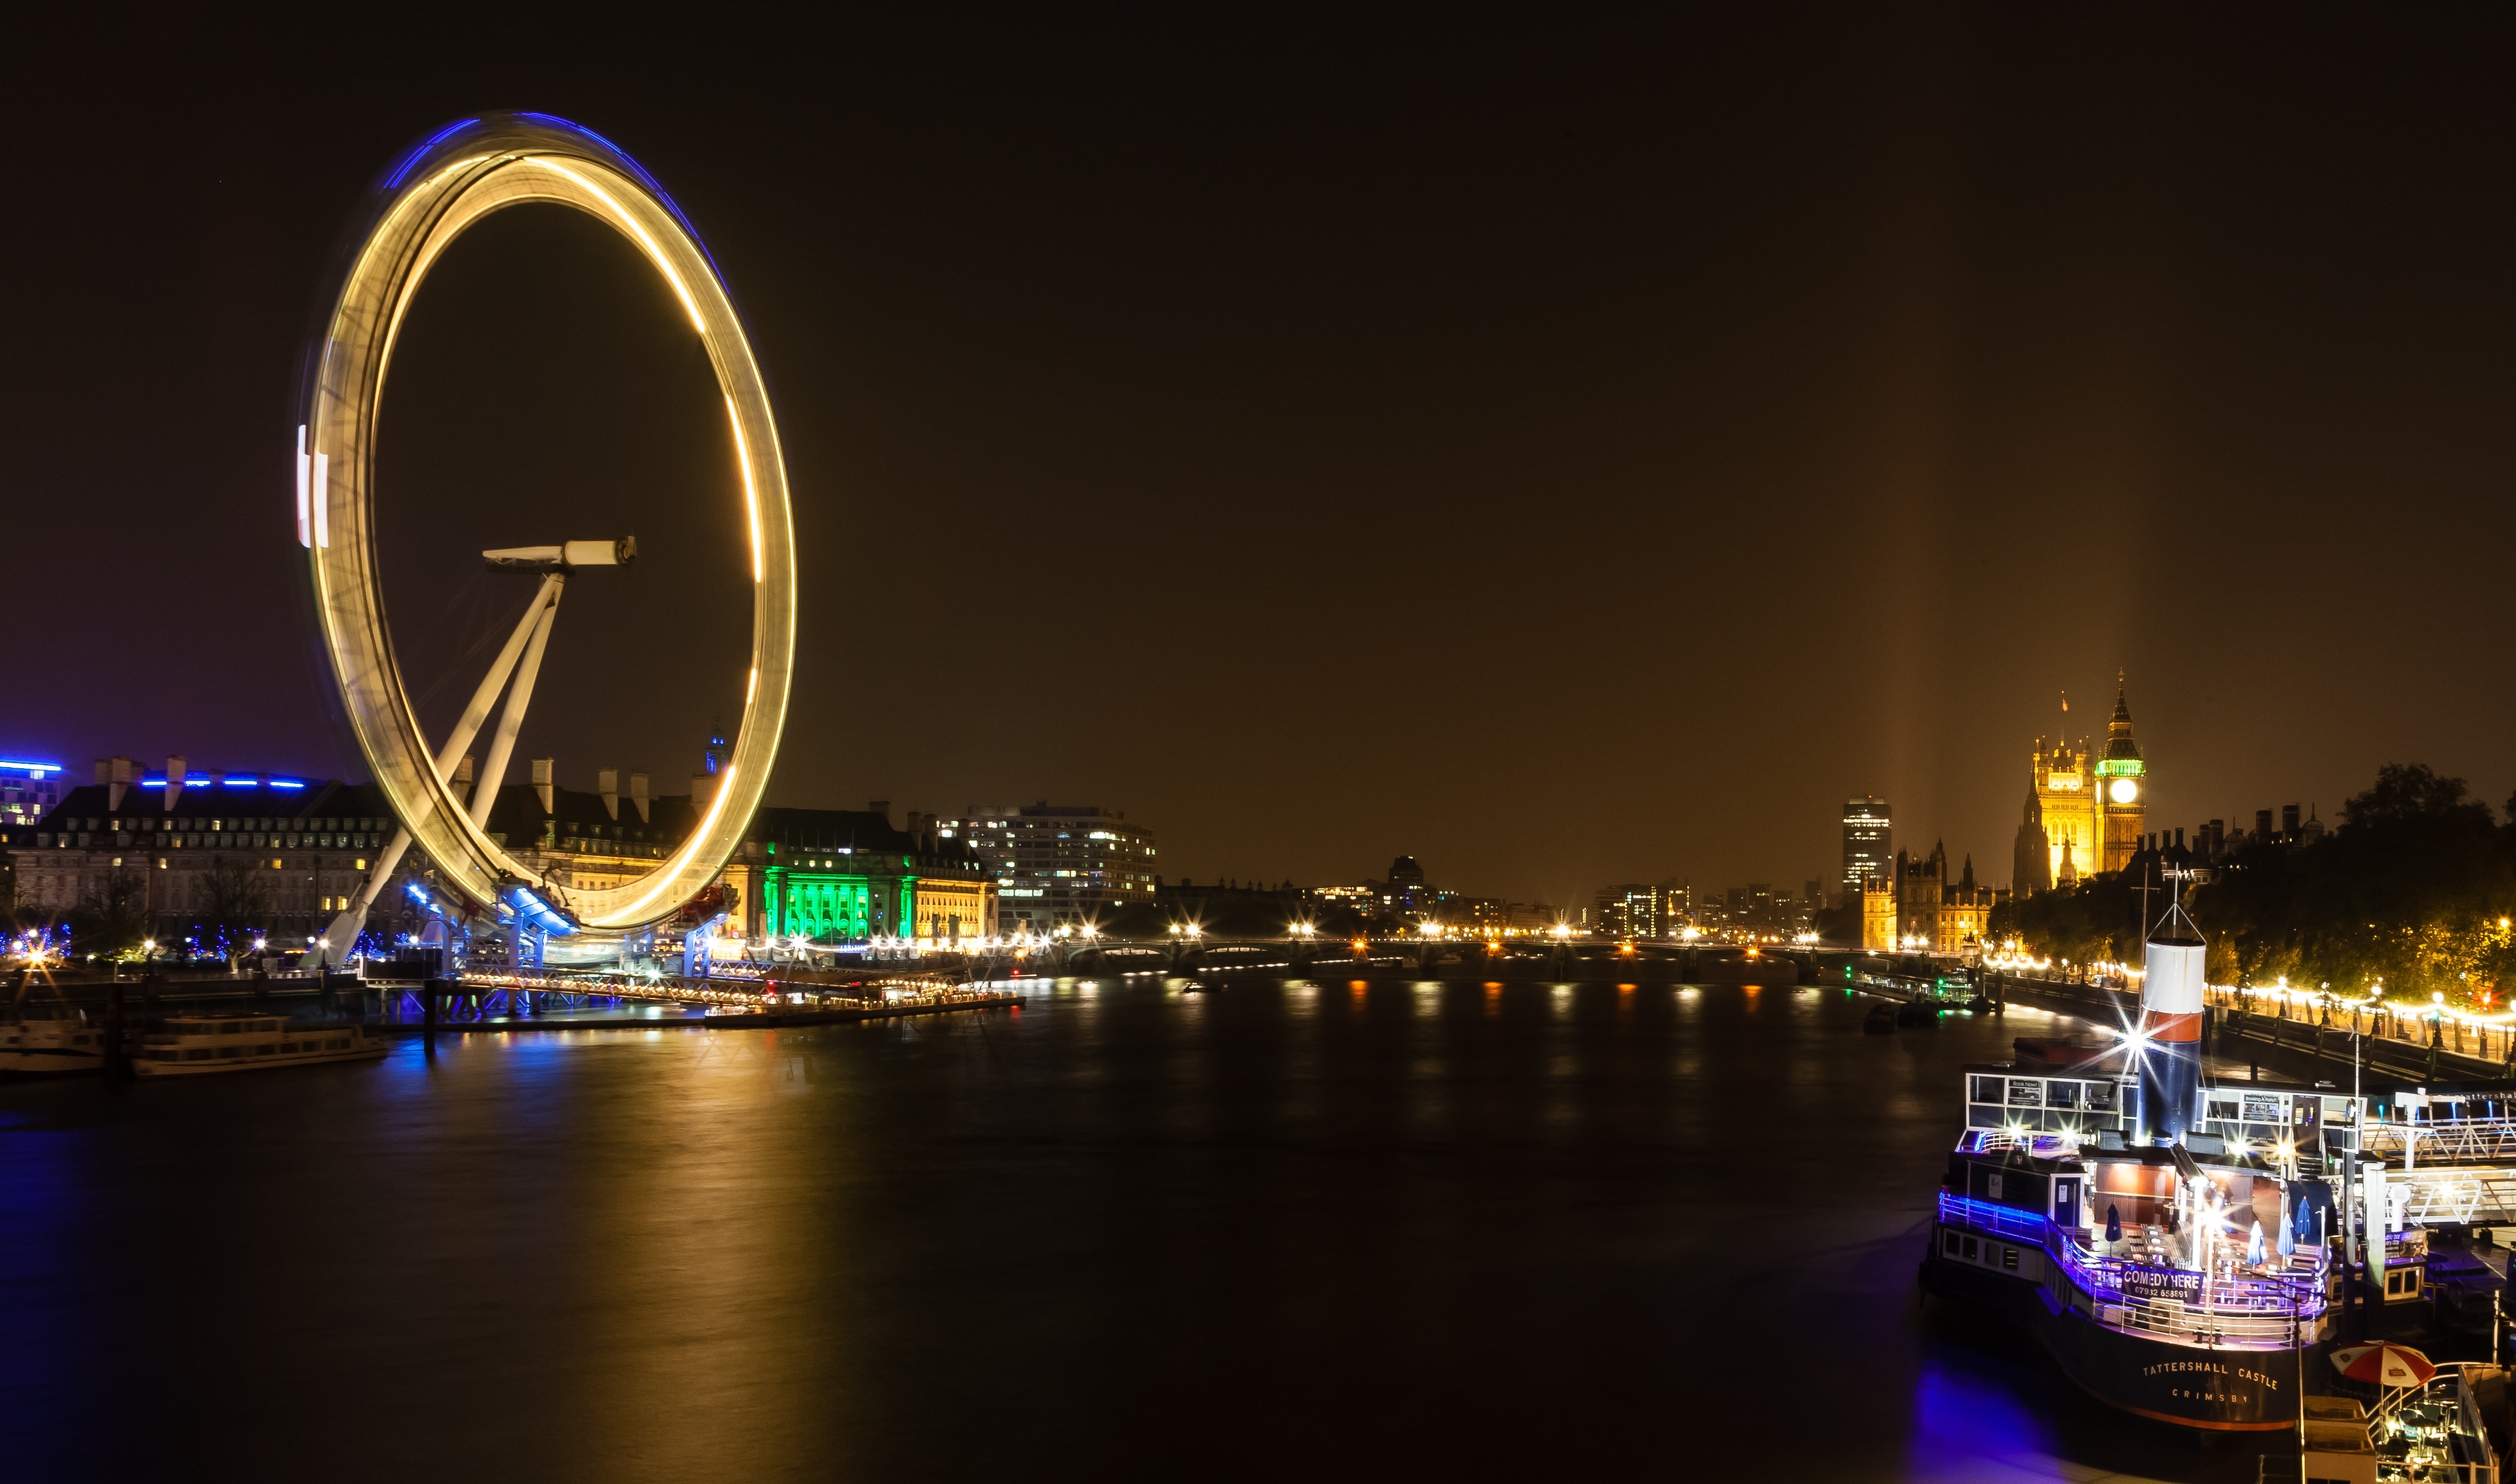 Thames, England, Landmark, London Eye, night, illuminated